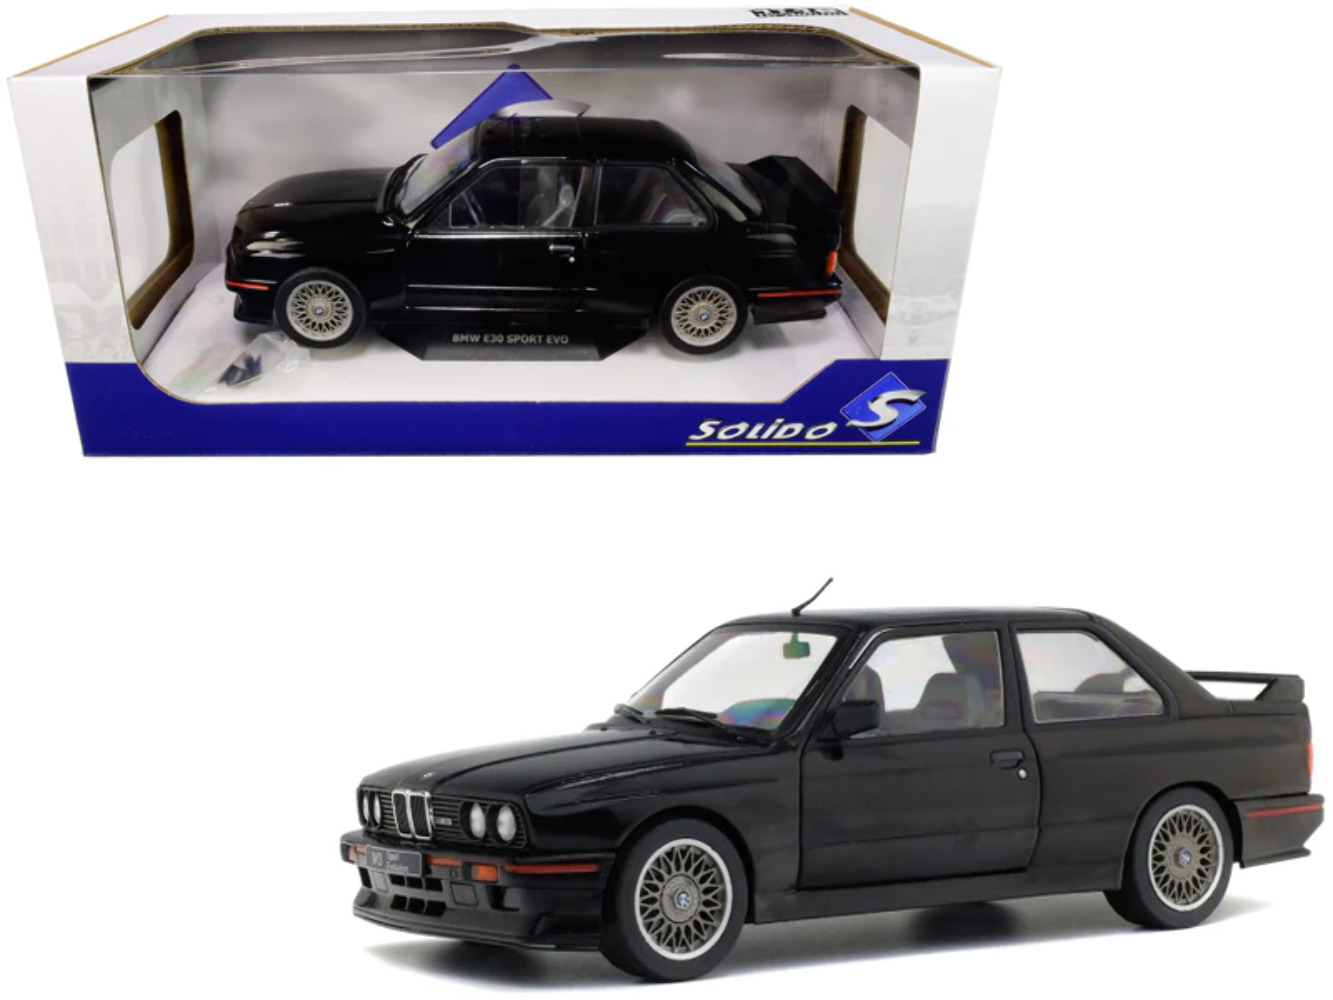 1990 BMW E30 Sport Evo Black 1/18 Diecast Model Car